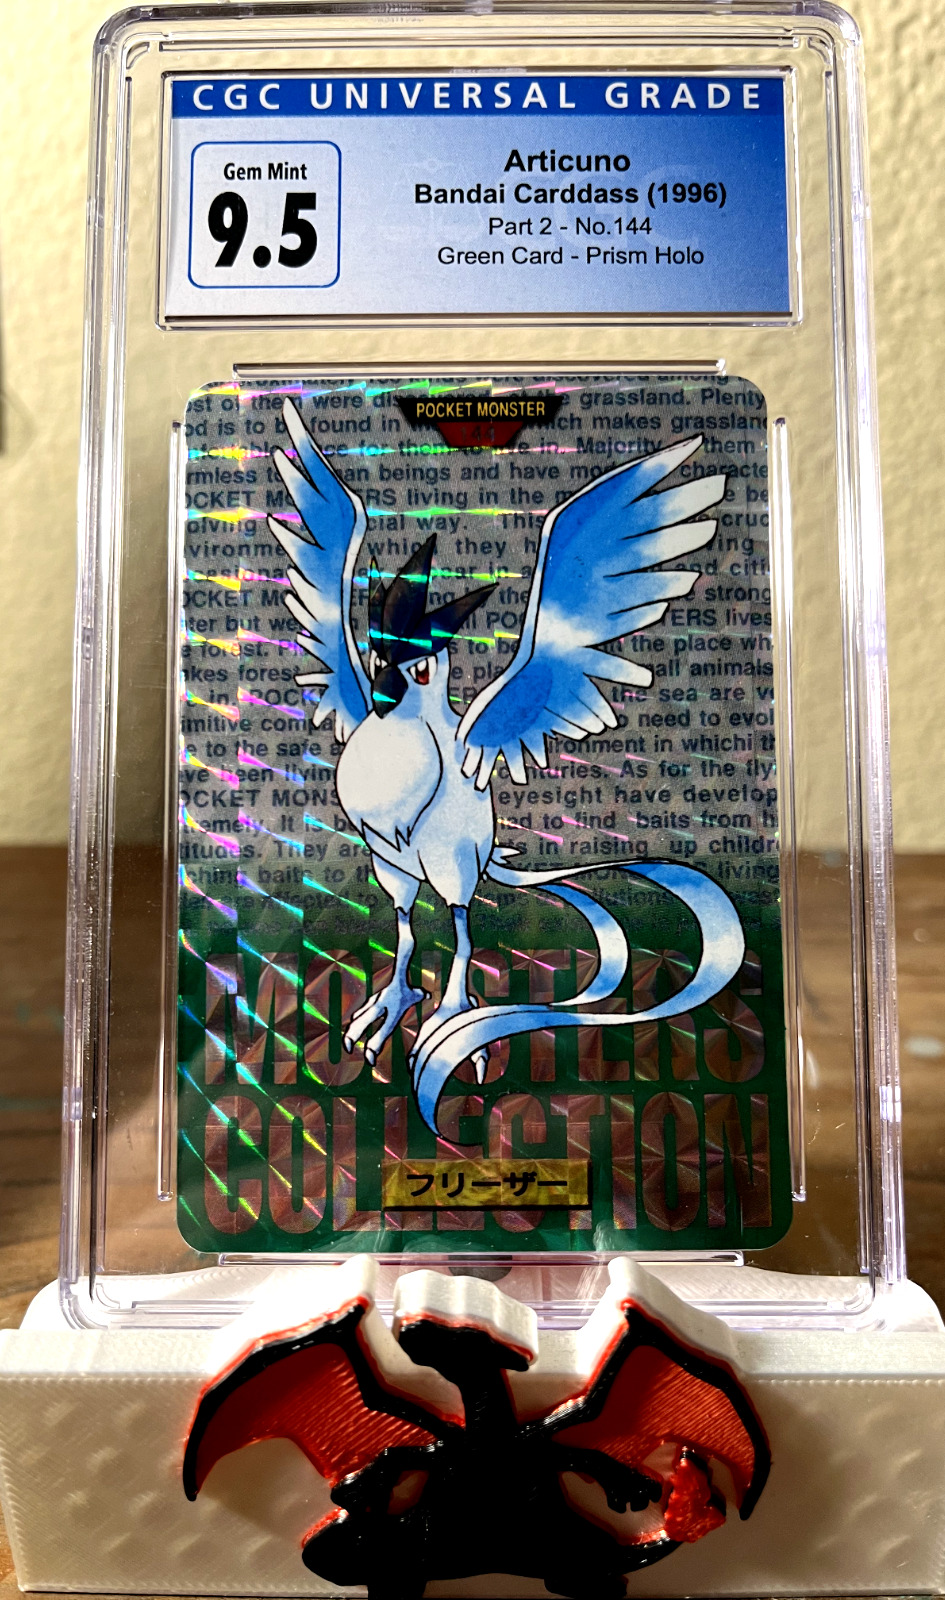 1996 Bandai Carddass Pokemon Green Card #144 Articuno - Prism Holo CGC 9.5